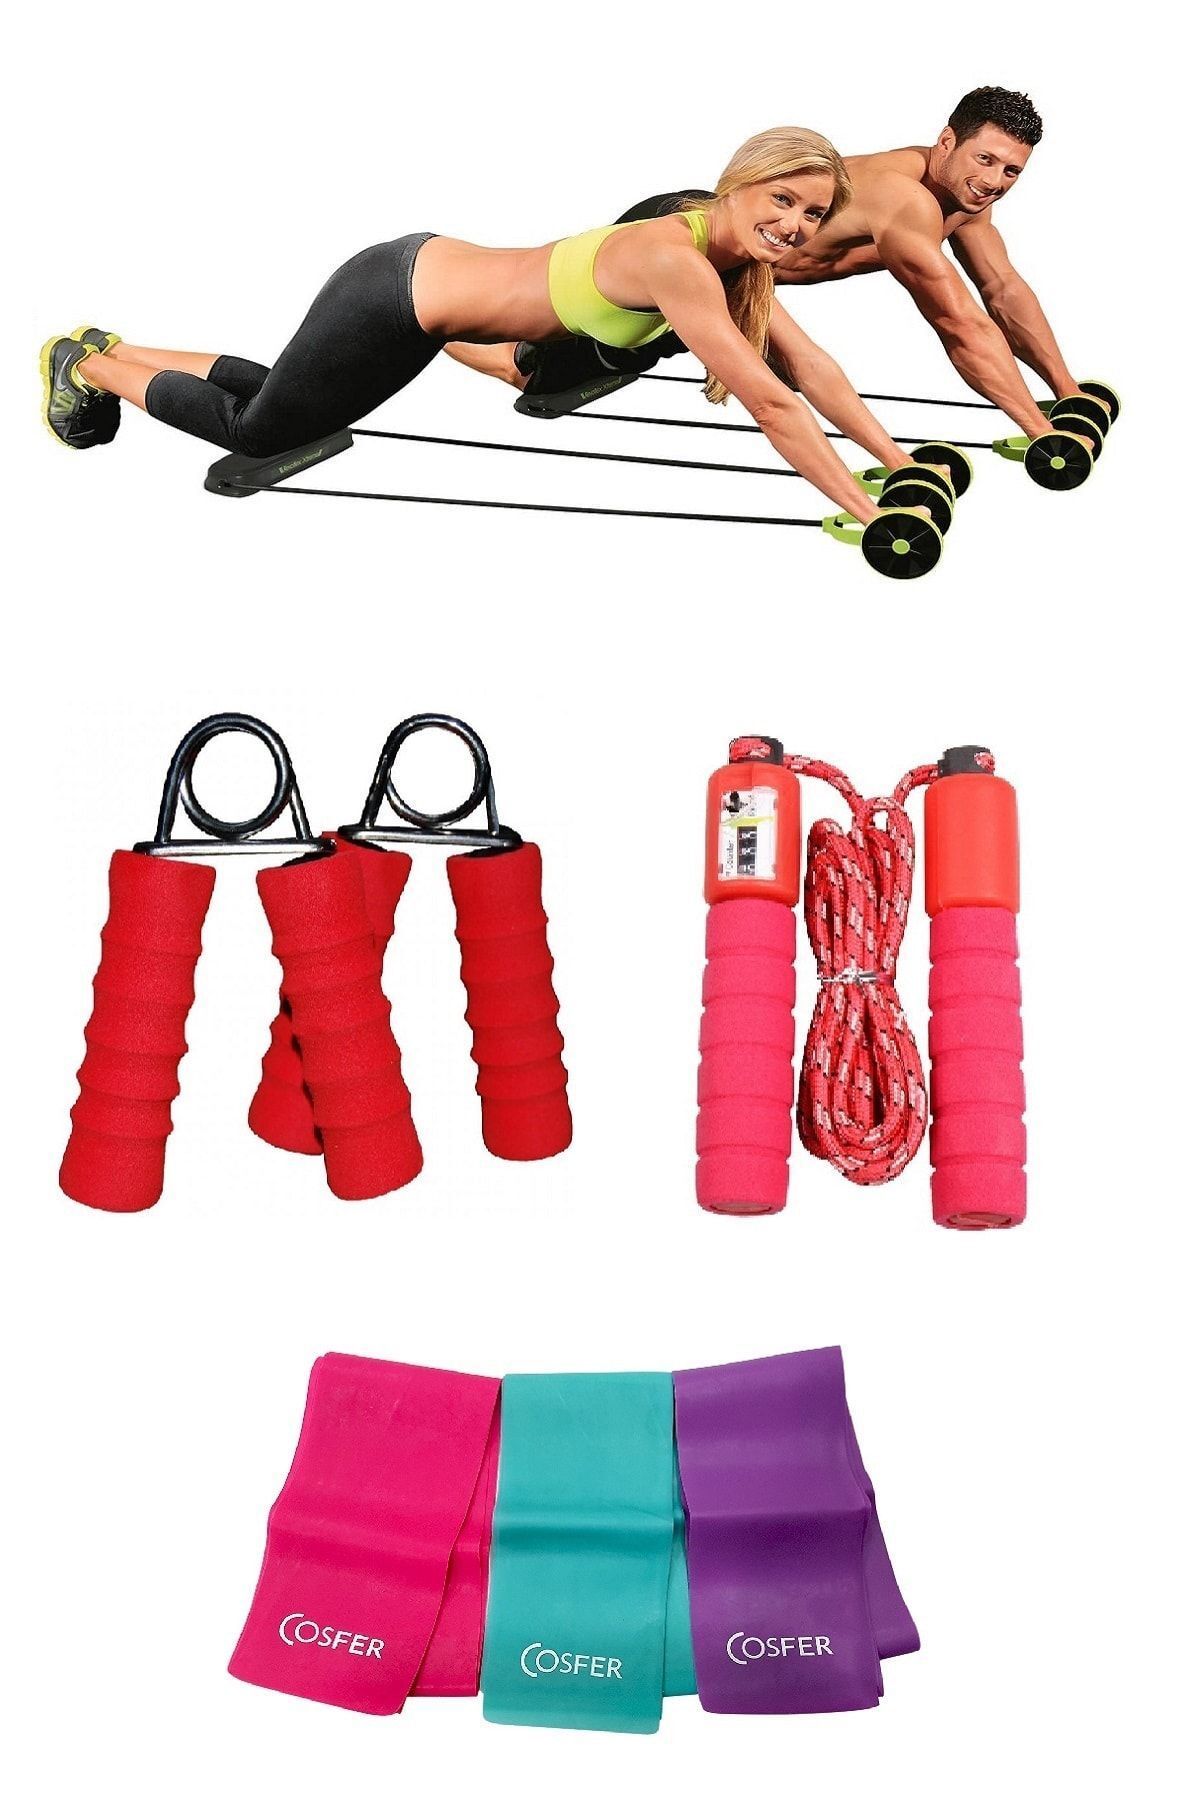 Nadom 4'lü Set Karın Kası Spor Aleti Kas Germe Güçlendirme 3'lü Pilates Bandı Sayaçlı Atlama Ipi El Yayı